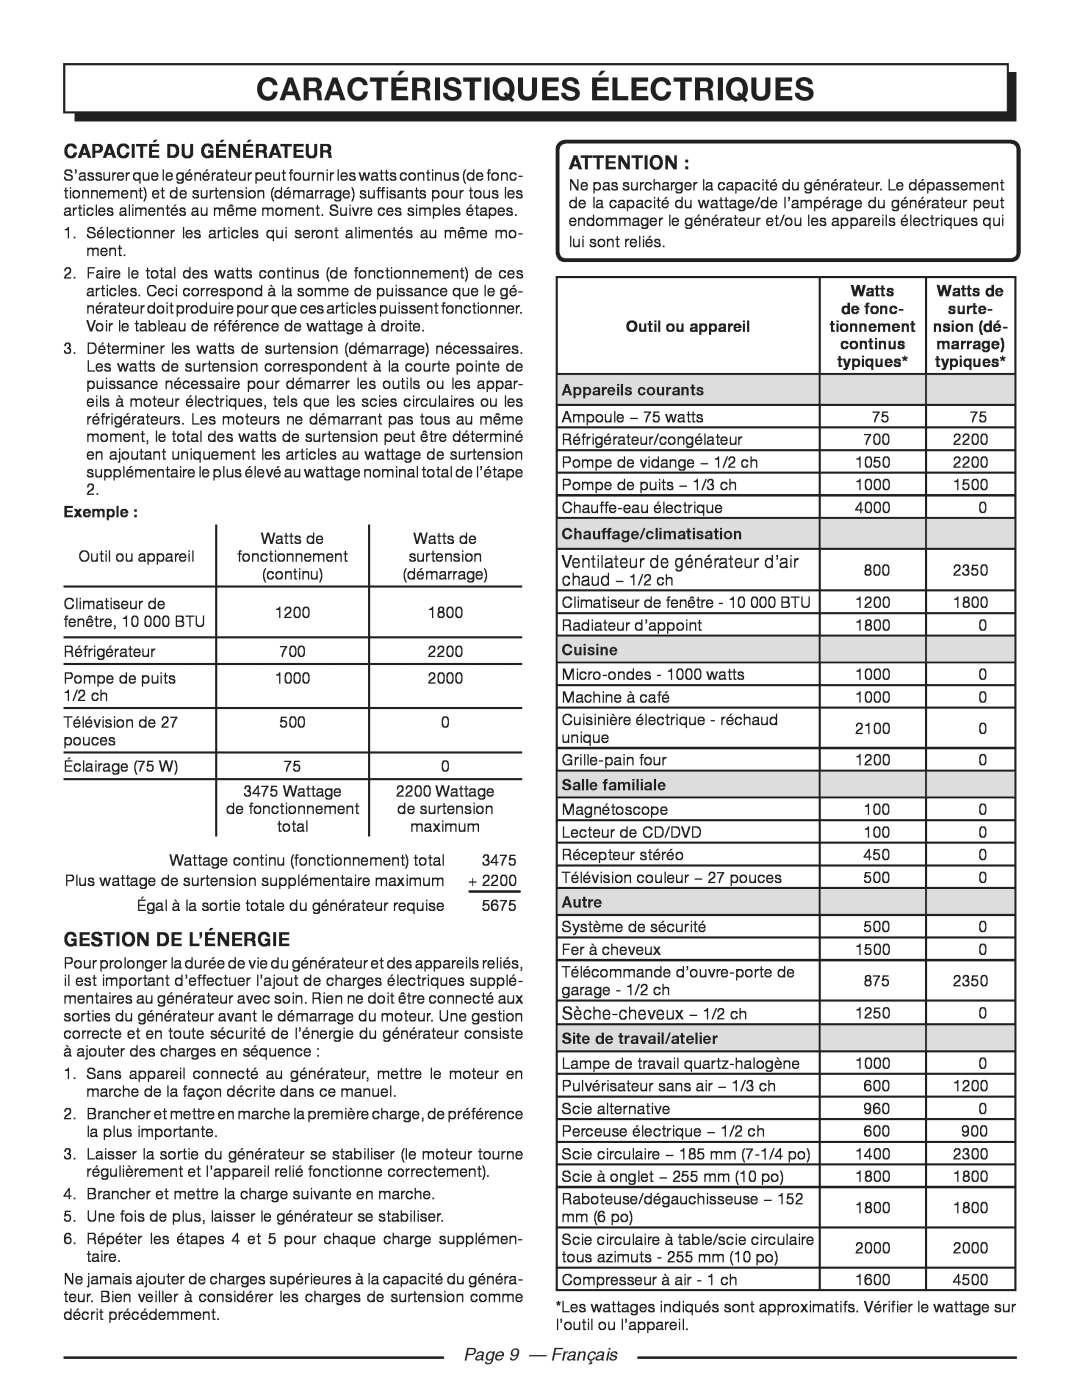 Homelite HGCA3000 capacité du générateur, Gestion De L’Énergie, Page 9 - Français, Caractéristiques électriques 